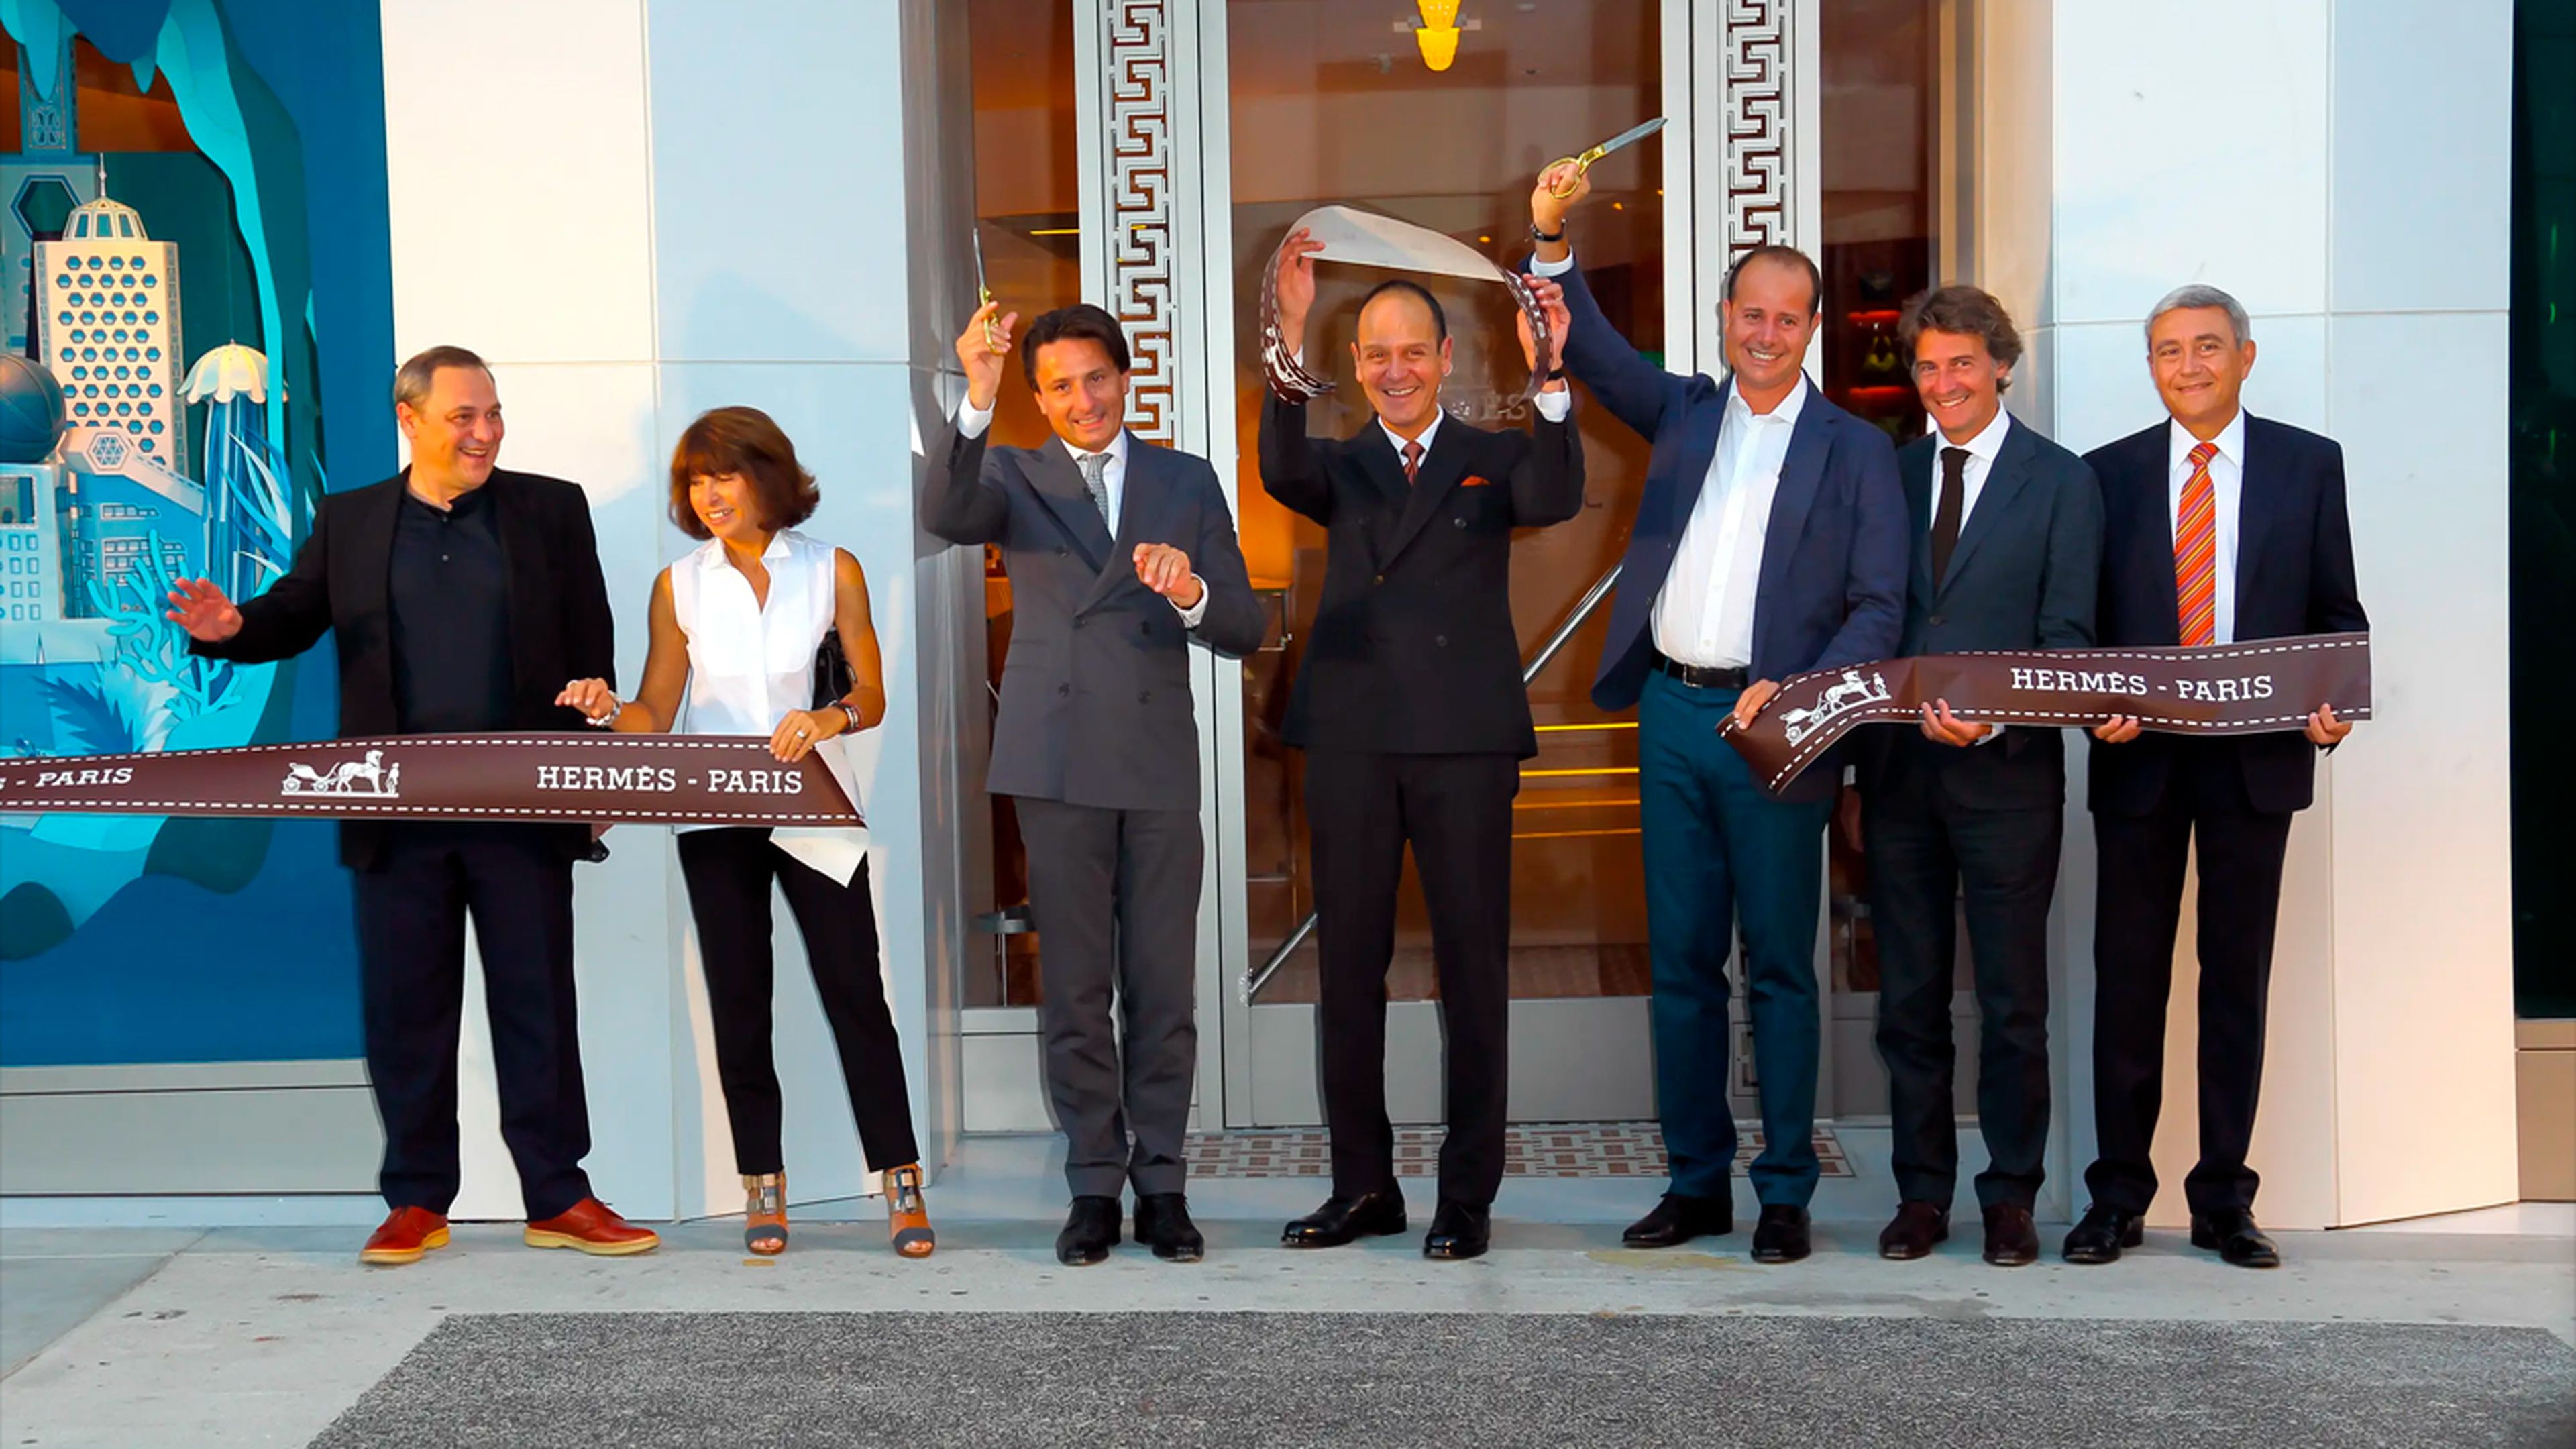 Los primos Axel Dumas (tercero por la izquierda) y Pierre-Alexis Dumas (tercero por la derecha) son la sexta generación al frente de Hermès.